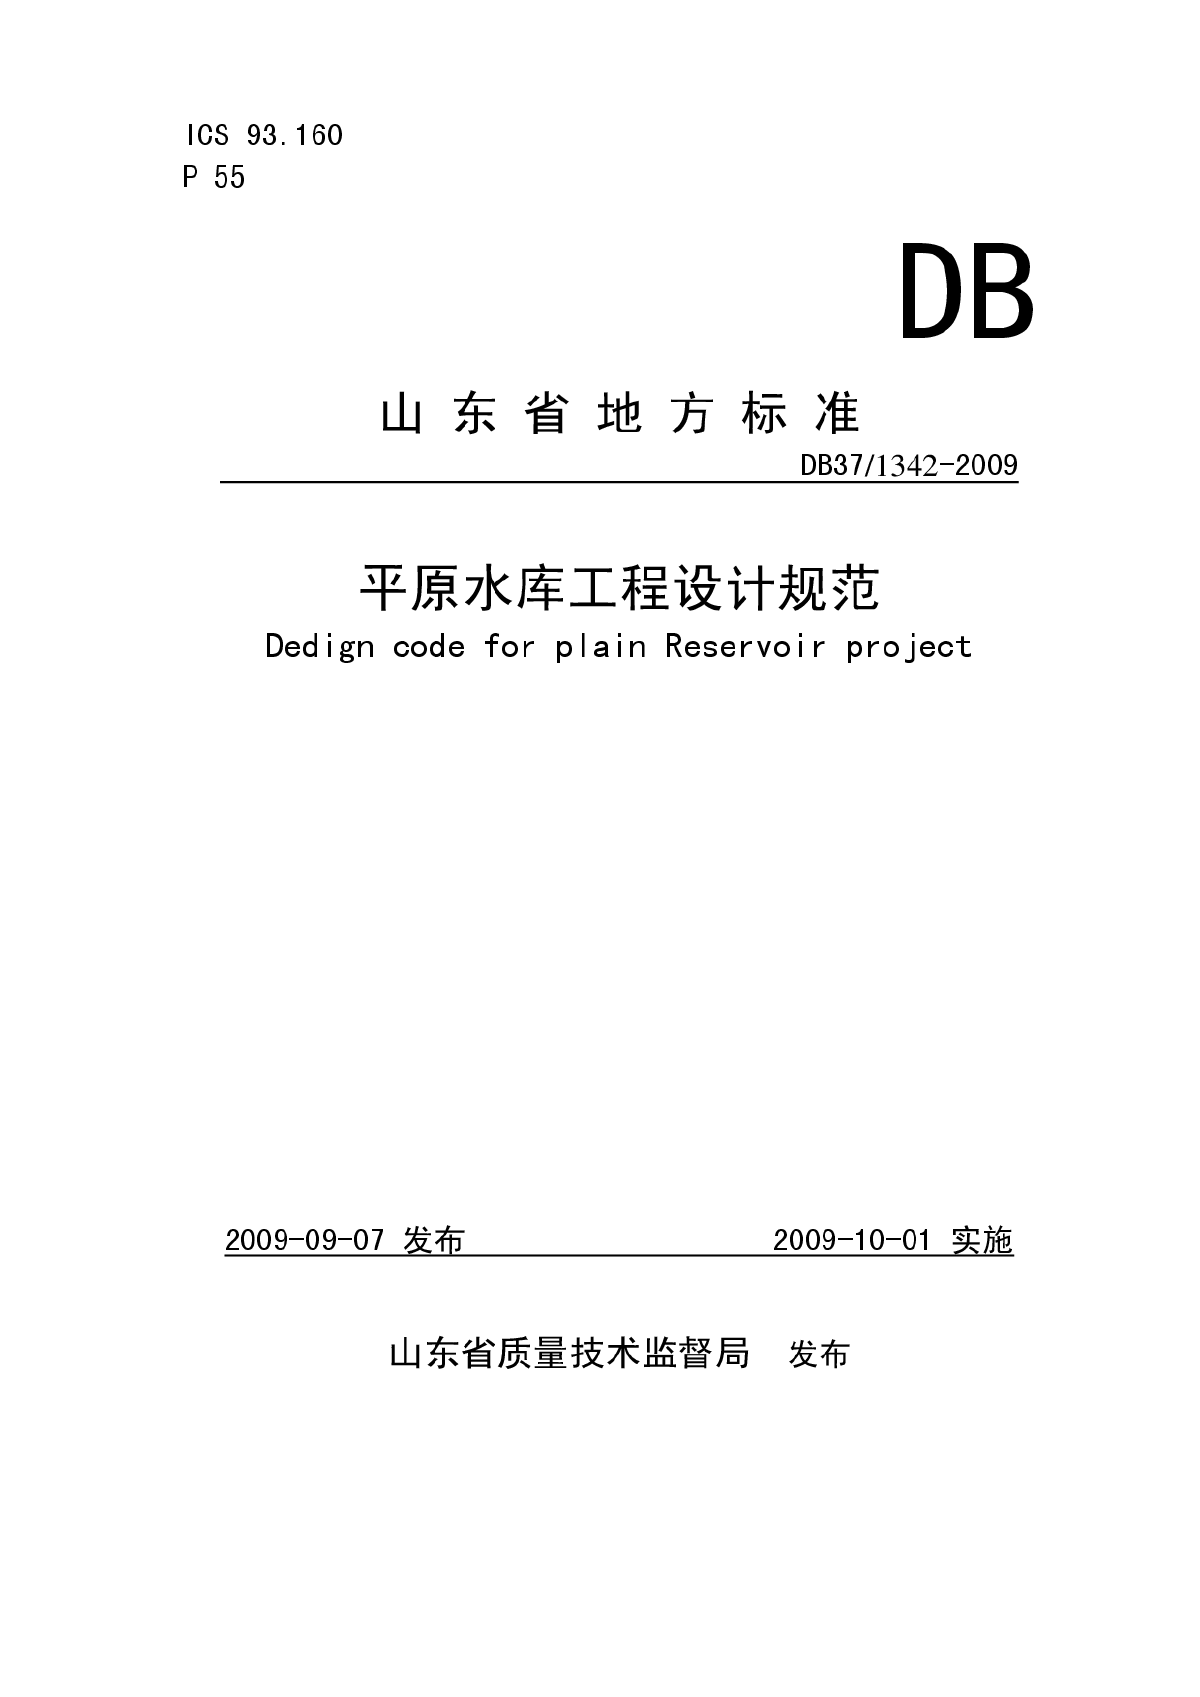 《山东省平原水库工程设计规范》